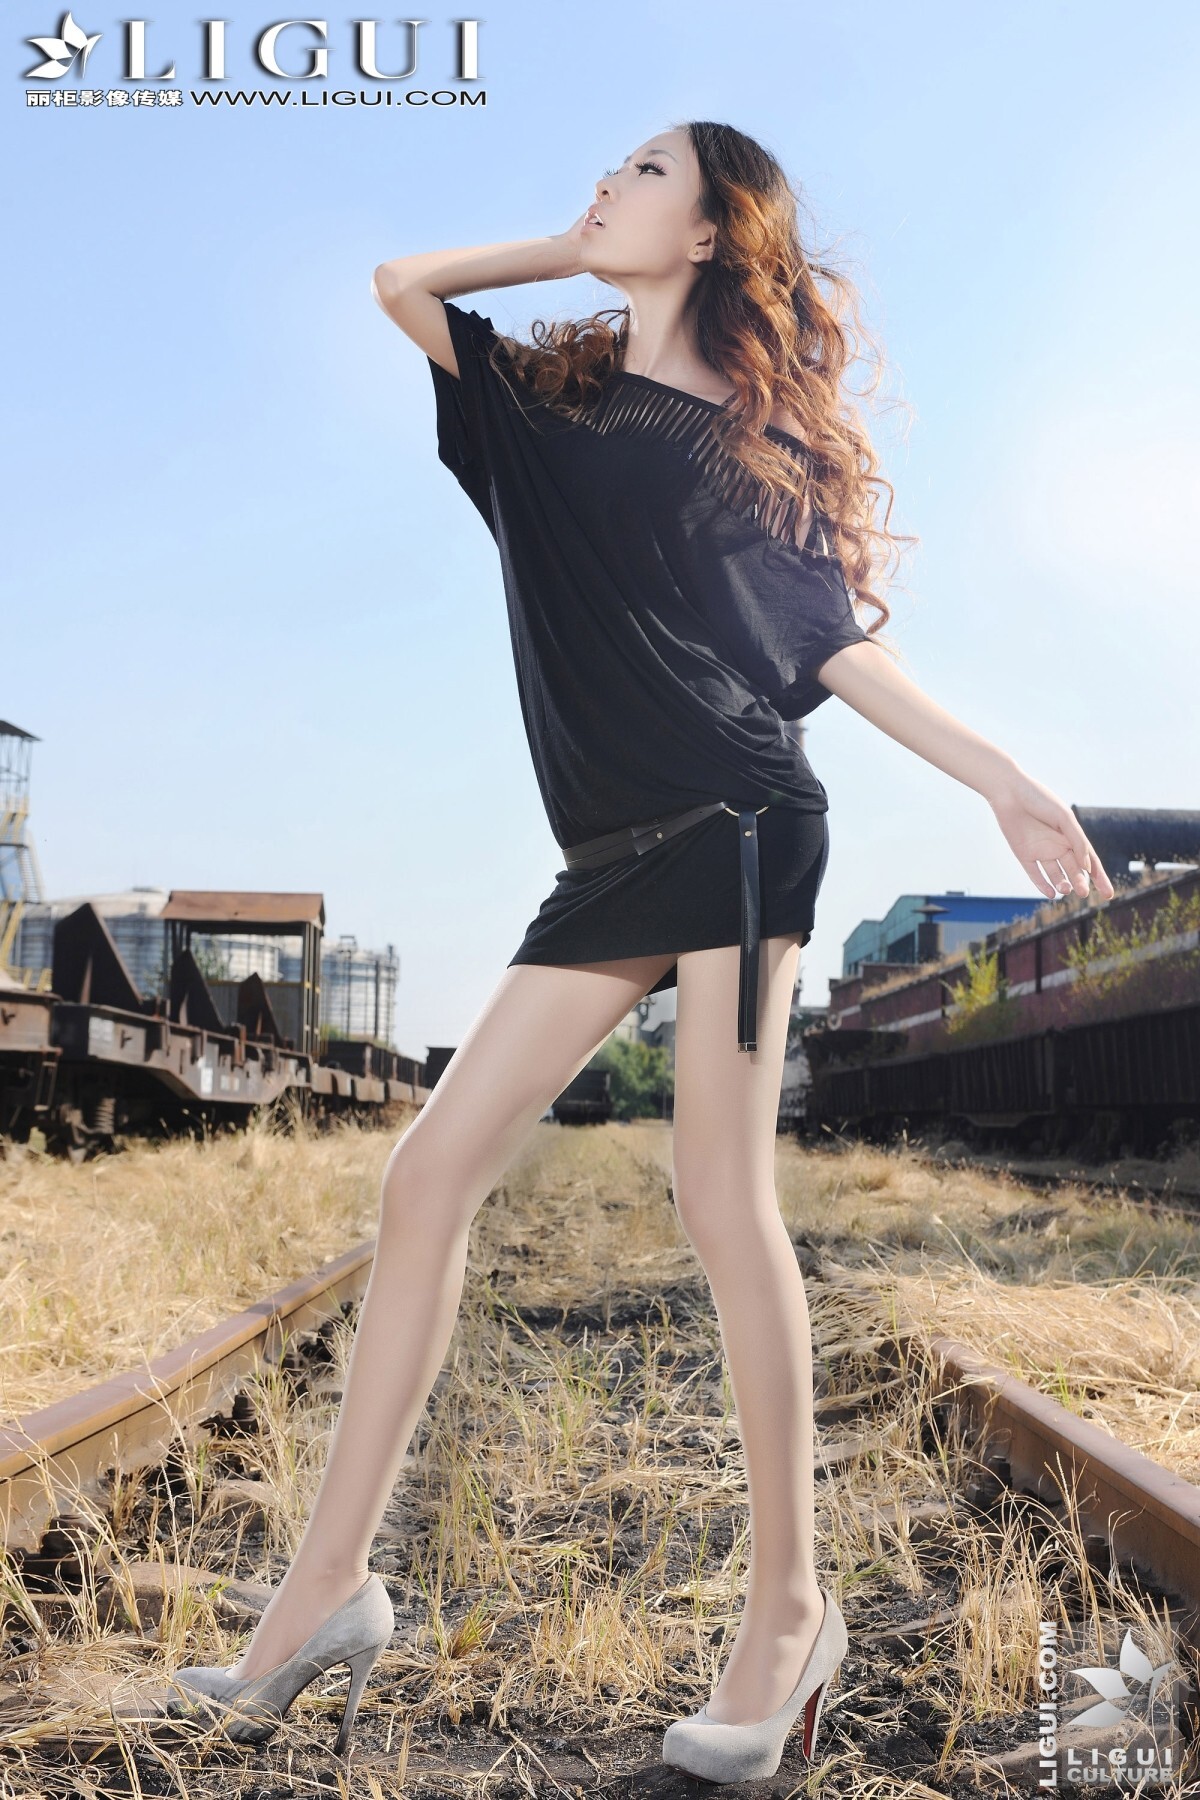 [丽柜]ligui 小镇火车站的美腿诱惑 Model-文欣